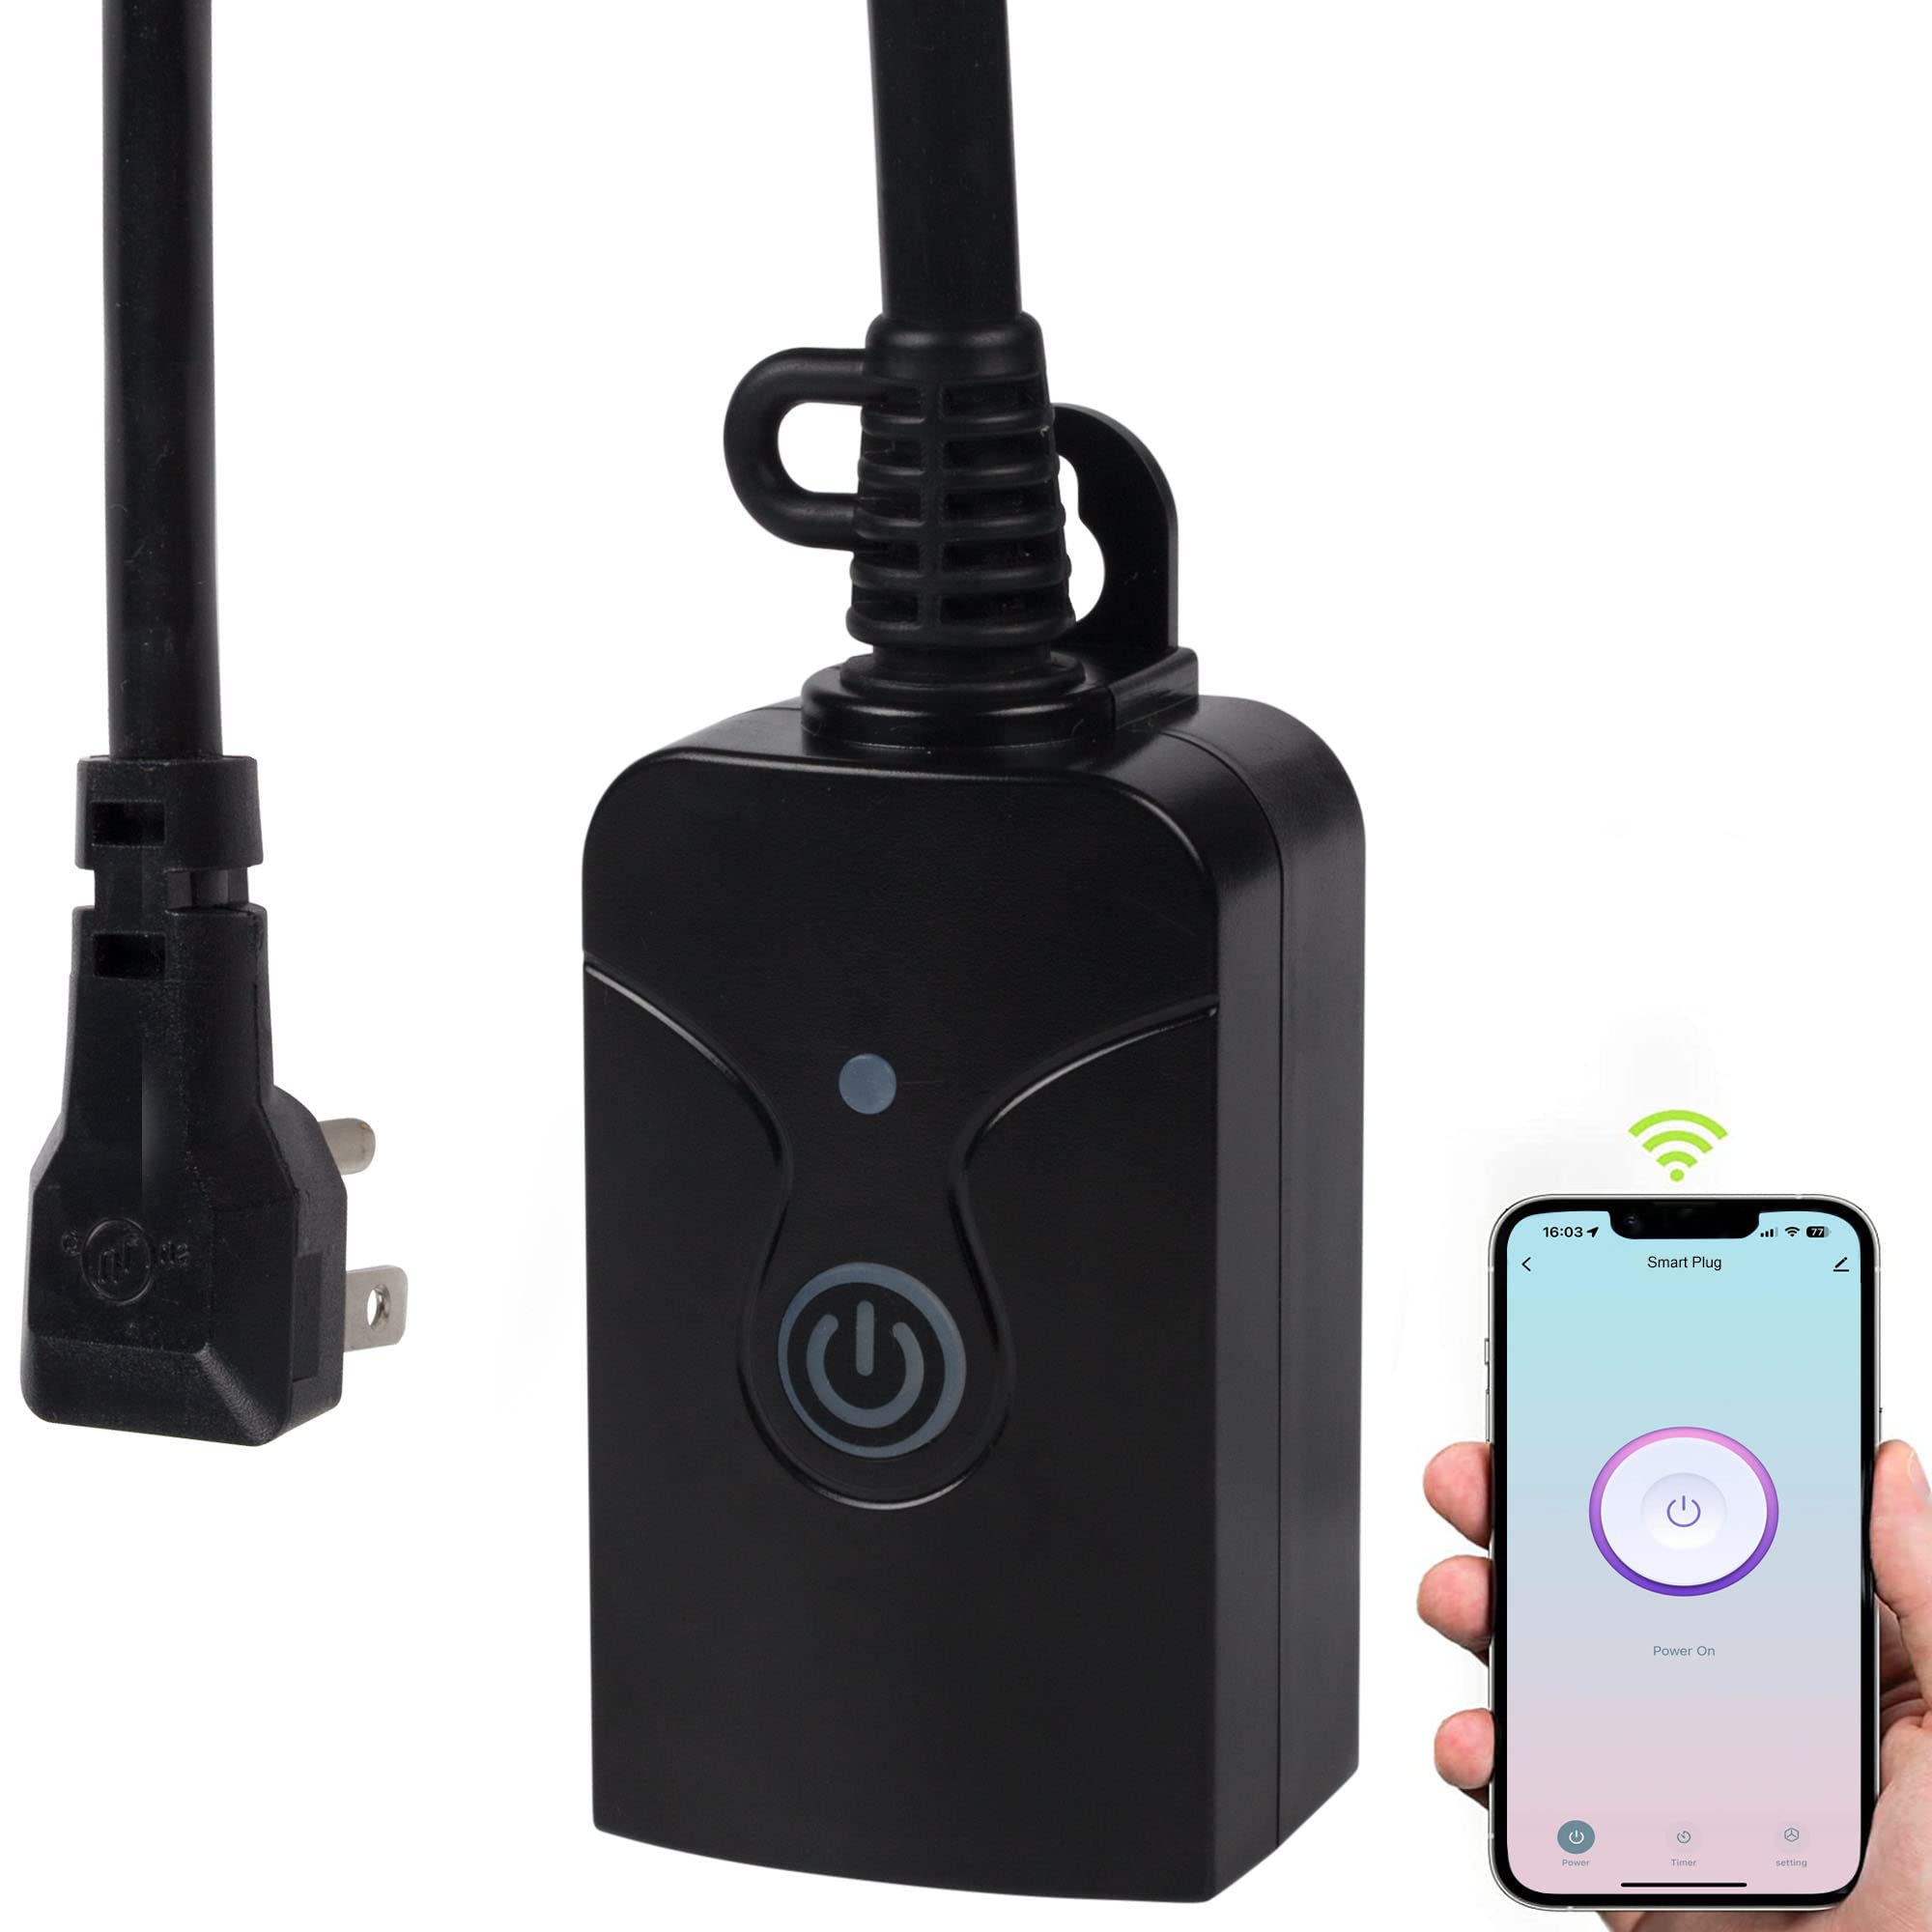 BN-Link 2 Pack WiFi Smart Plug Set 